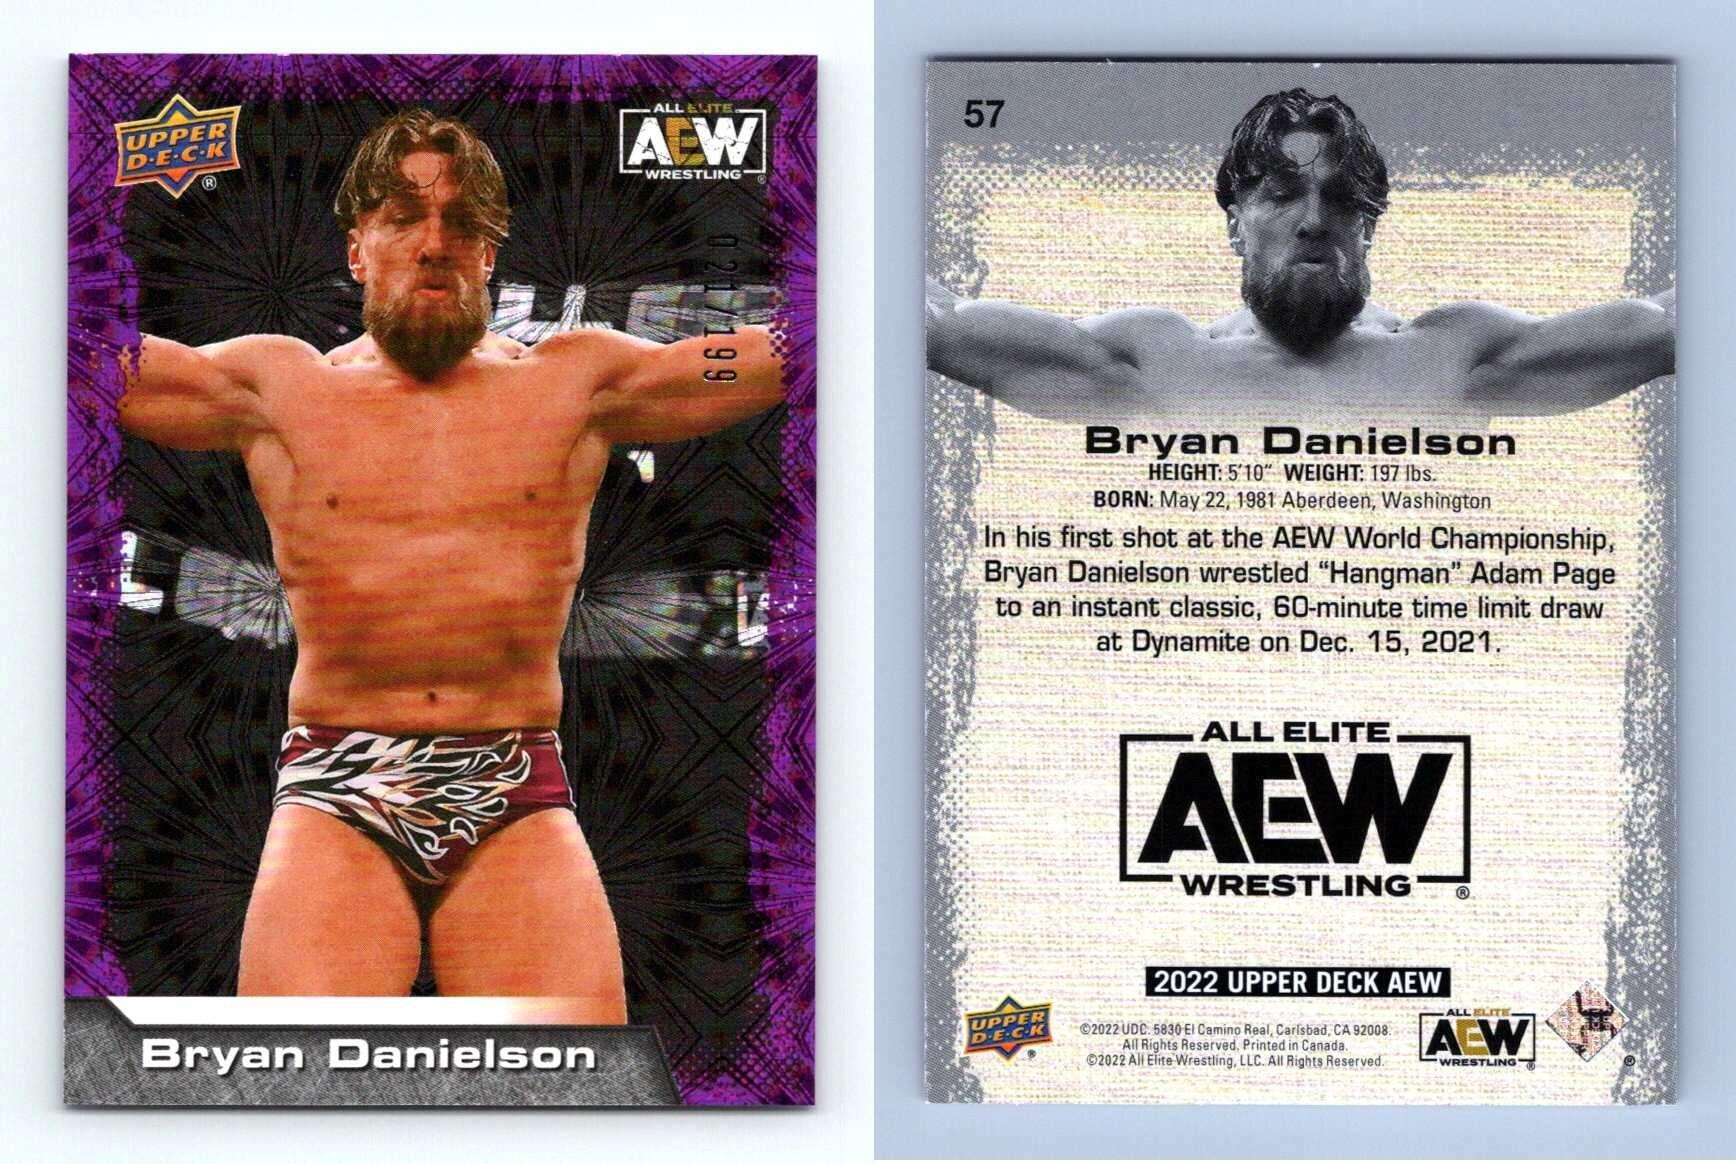 2022 Upper Deck #71 SHAWN SPEARS AEW Wrestling card